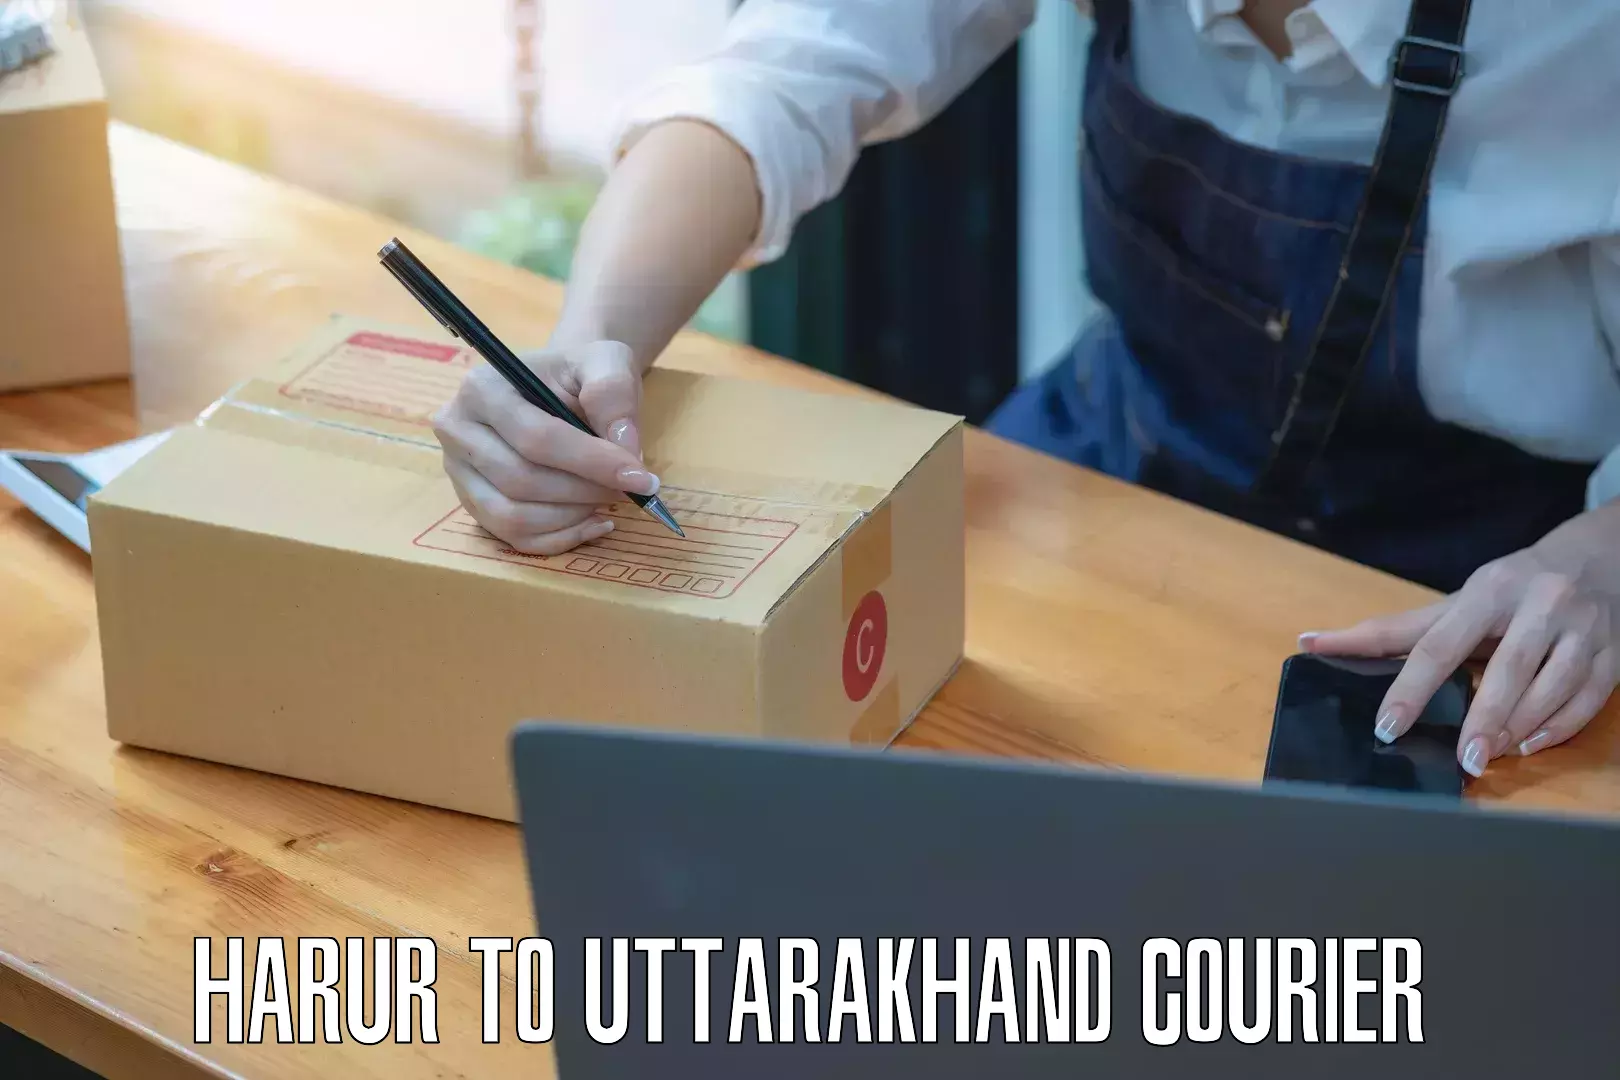 Full-service courier options Harur to Uttarakhand